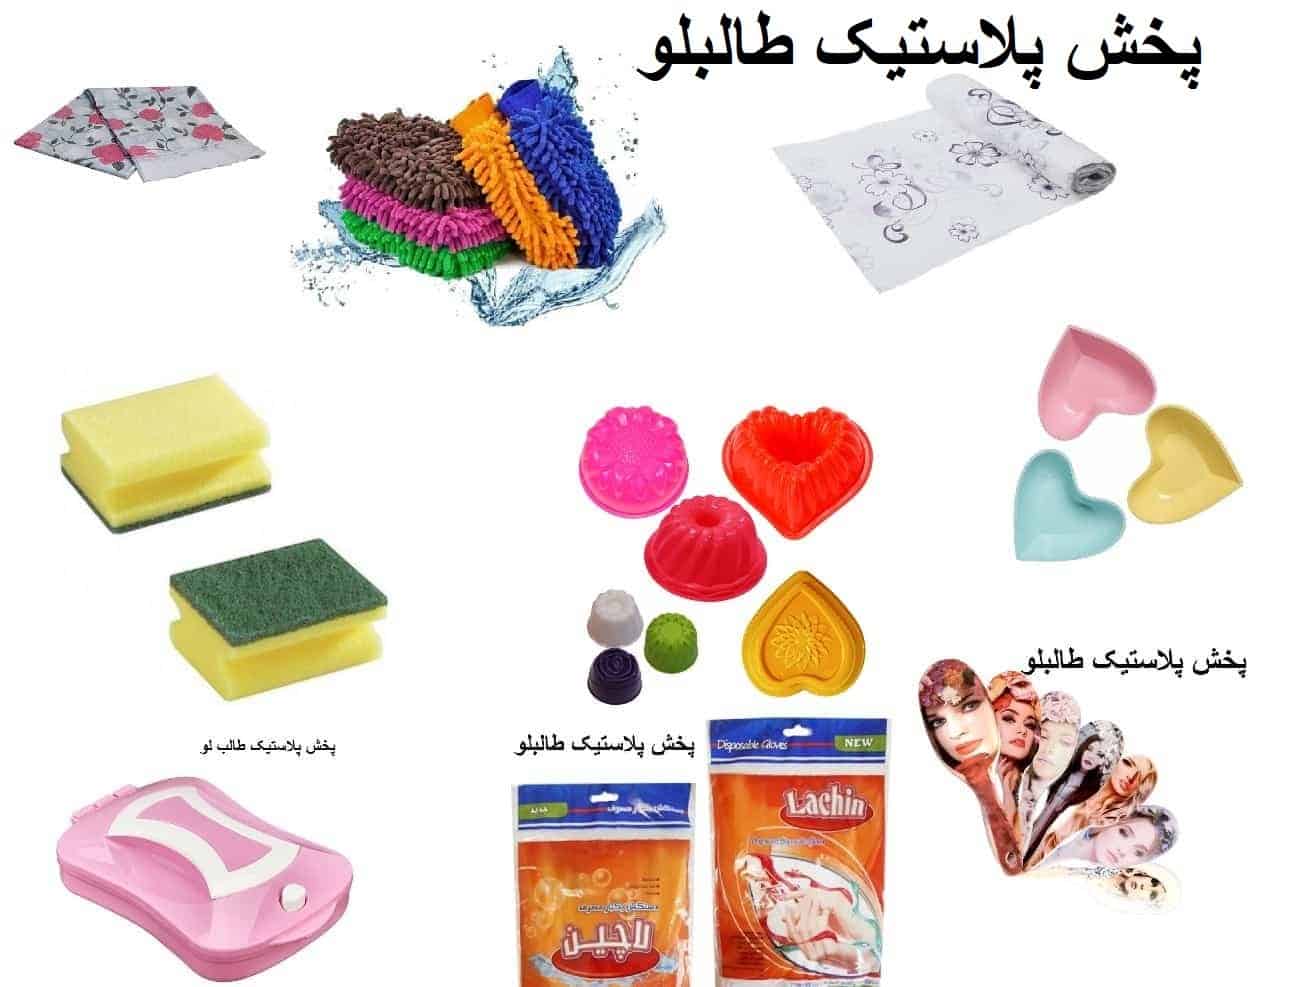 پخش پلاستیک در تهران فروش عمده انواع خرده ریز آشپزخانه پلاستیکی و فانتزی و اسباب بازی و لوازم خررازی